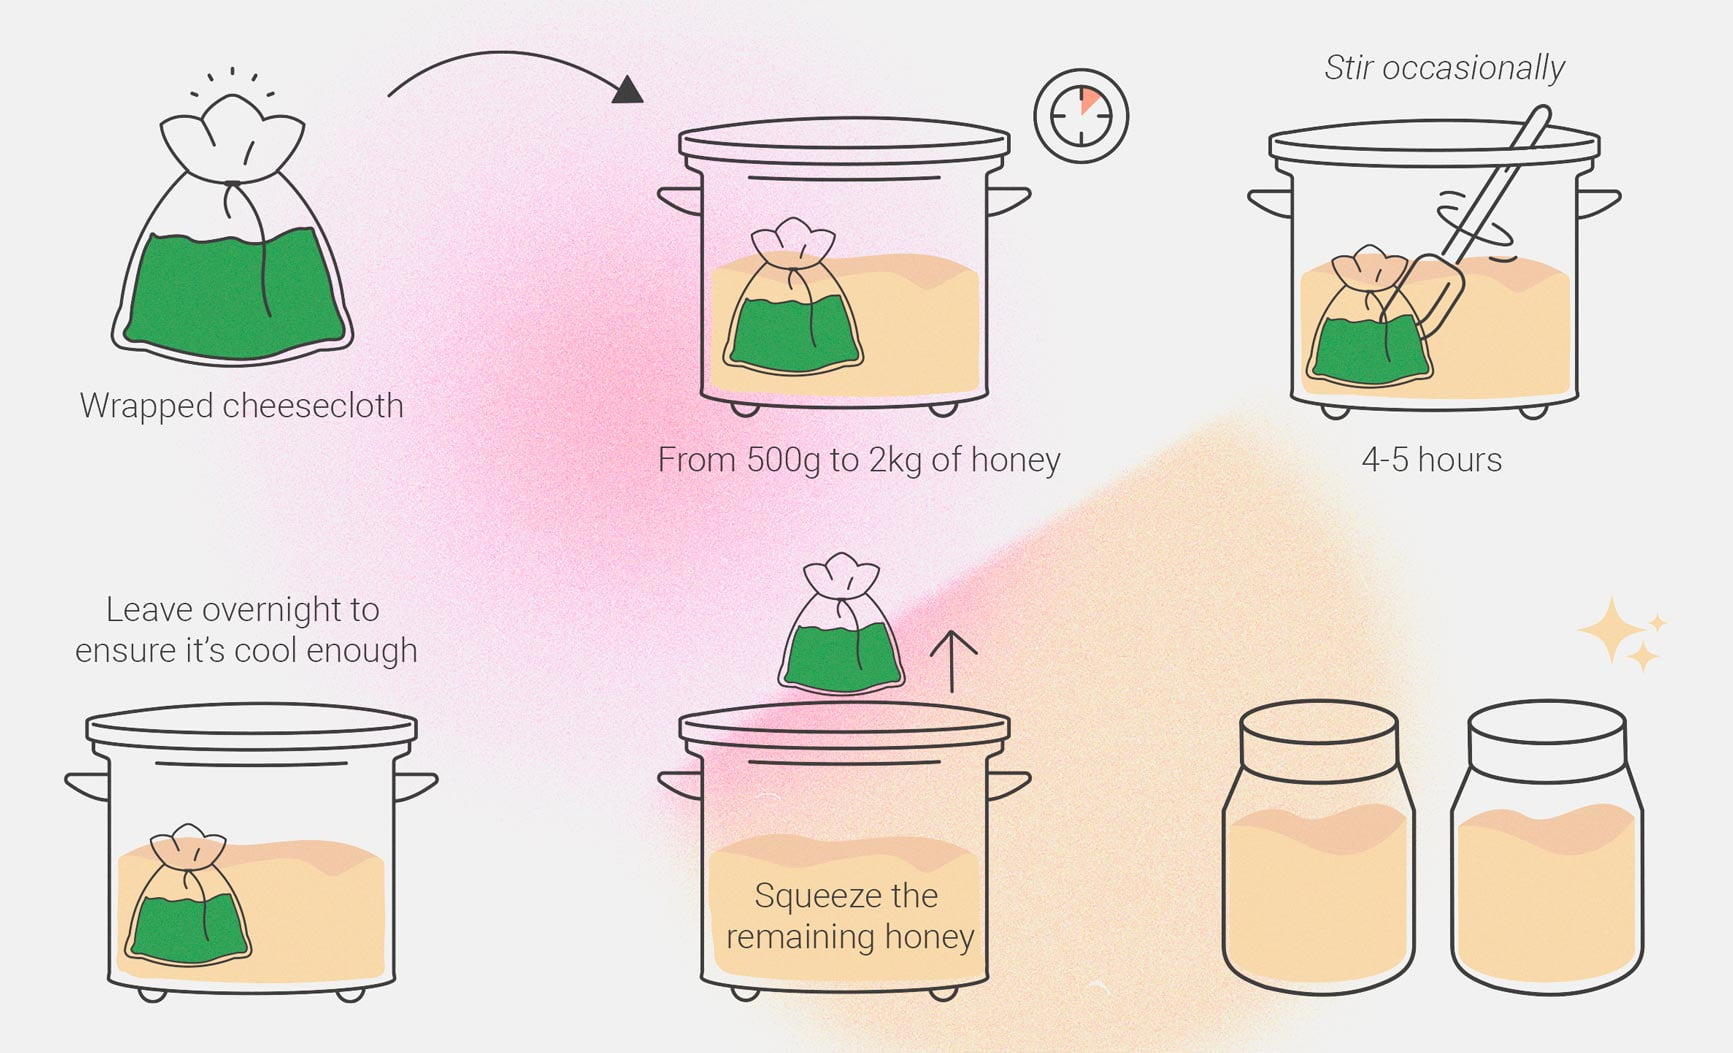 Cómo hacer una tintura de marihuana con miel en casa